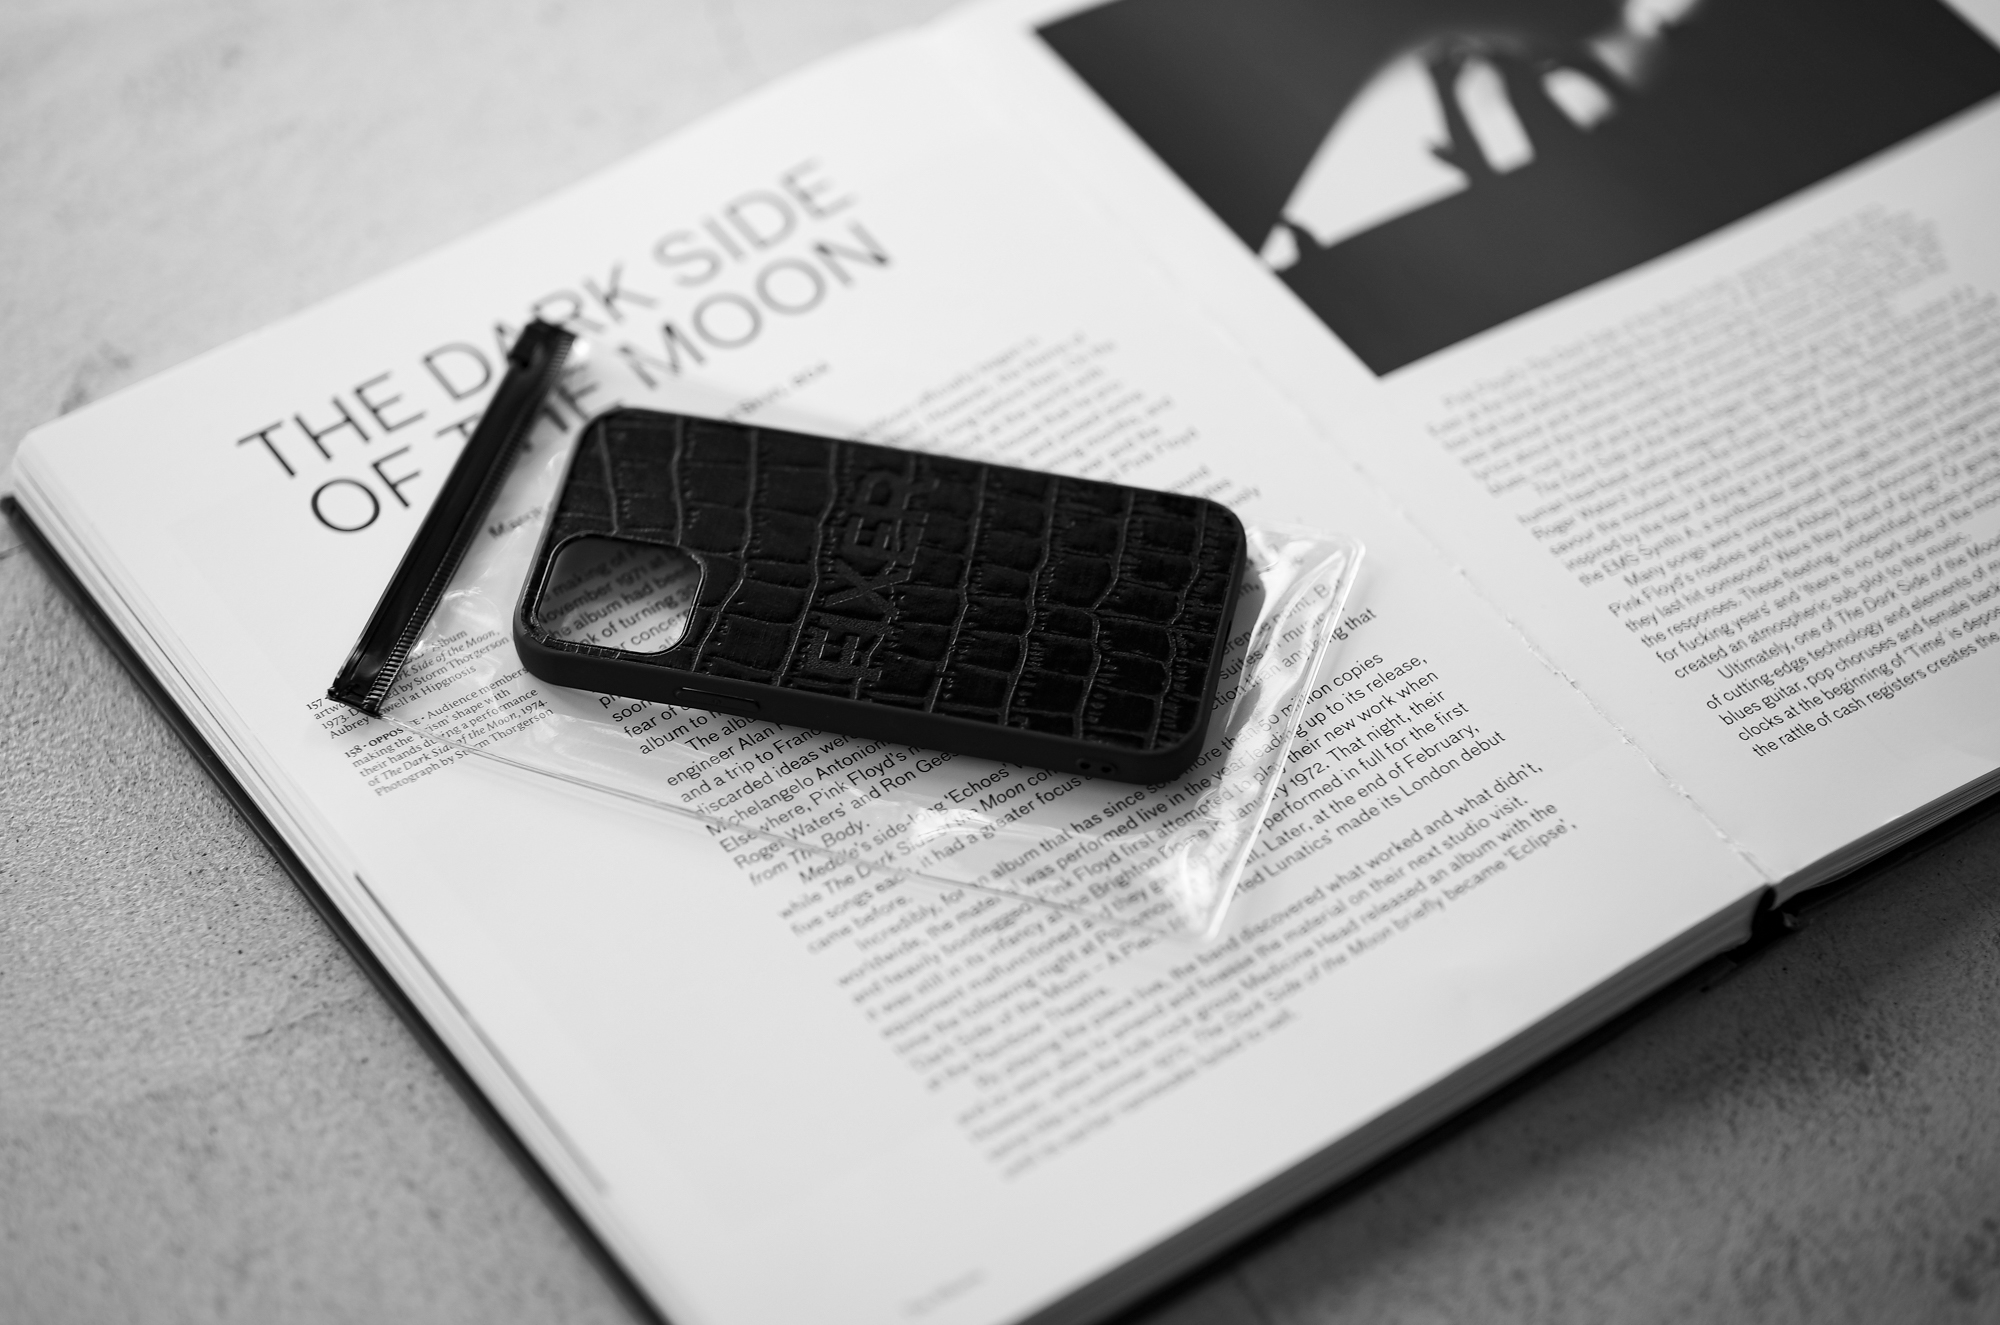 FIXER "iPhone 12 Crocodile Case" ALL BLACK フィクサー アイフォンケース 携帯ケース ノーマルケース クロコダイルケース ブラック ブラック ホワイト オールブラック 愛知 名古屋 Alto e Diritto altoediritto アルトエデリット